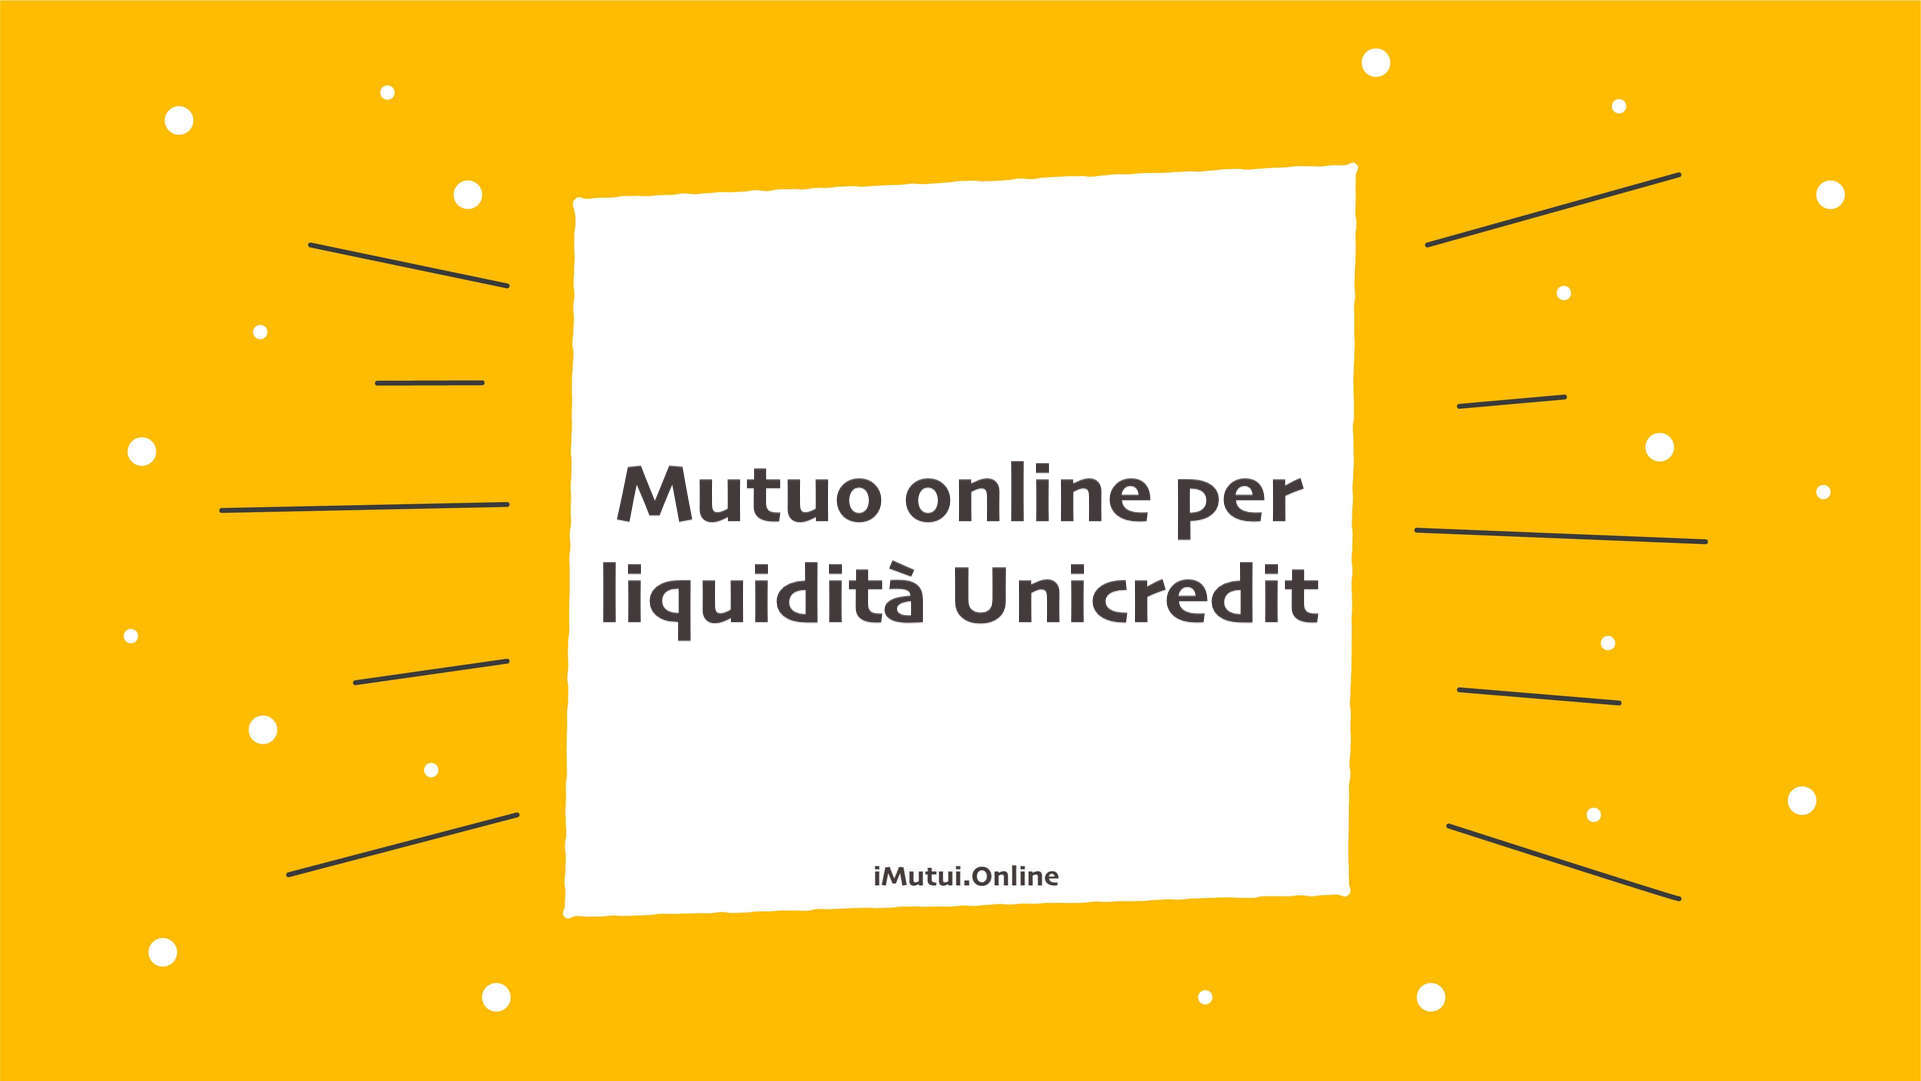 Mutuo online per liquidità Unicredit